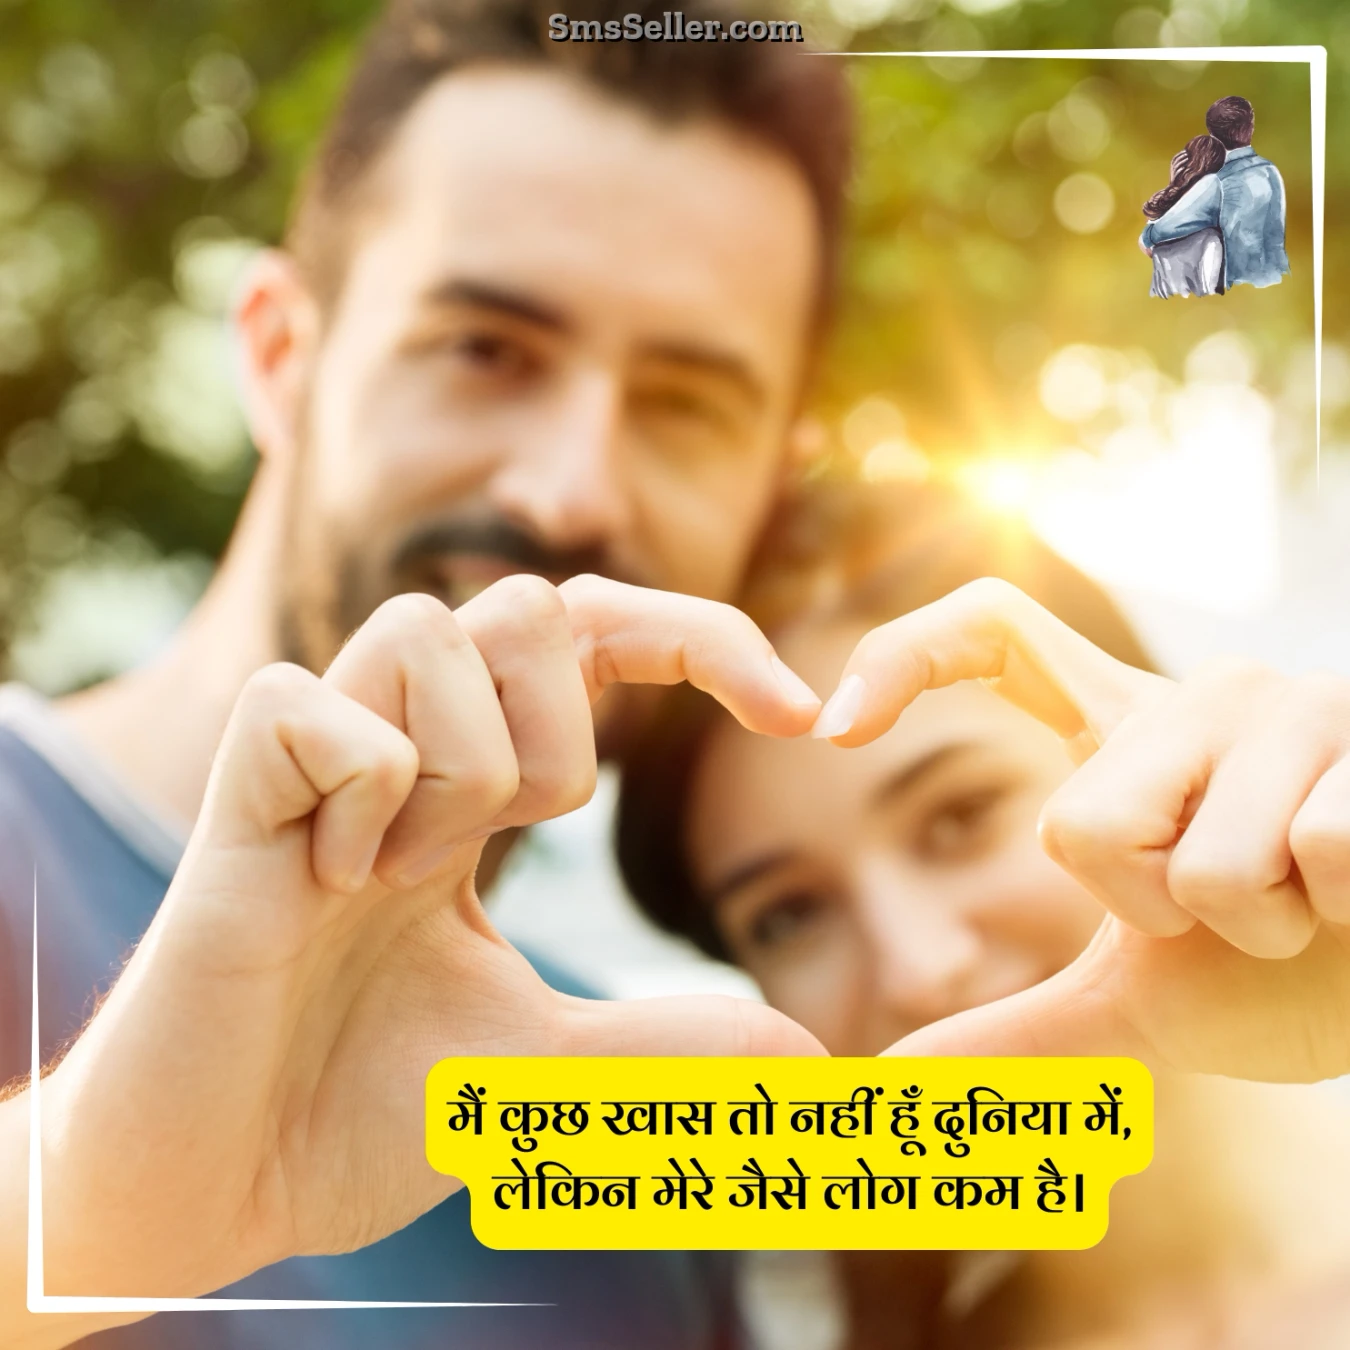 love quotes in hindi main kuchh khaas to nahin